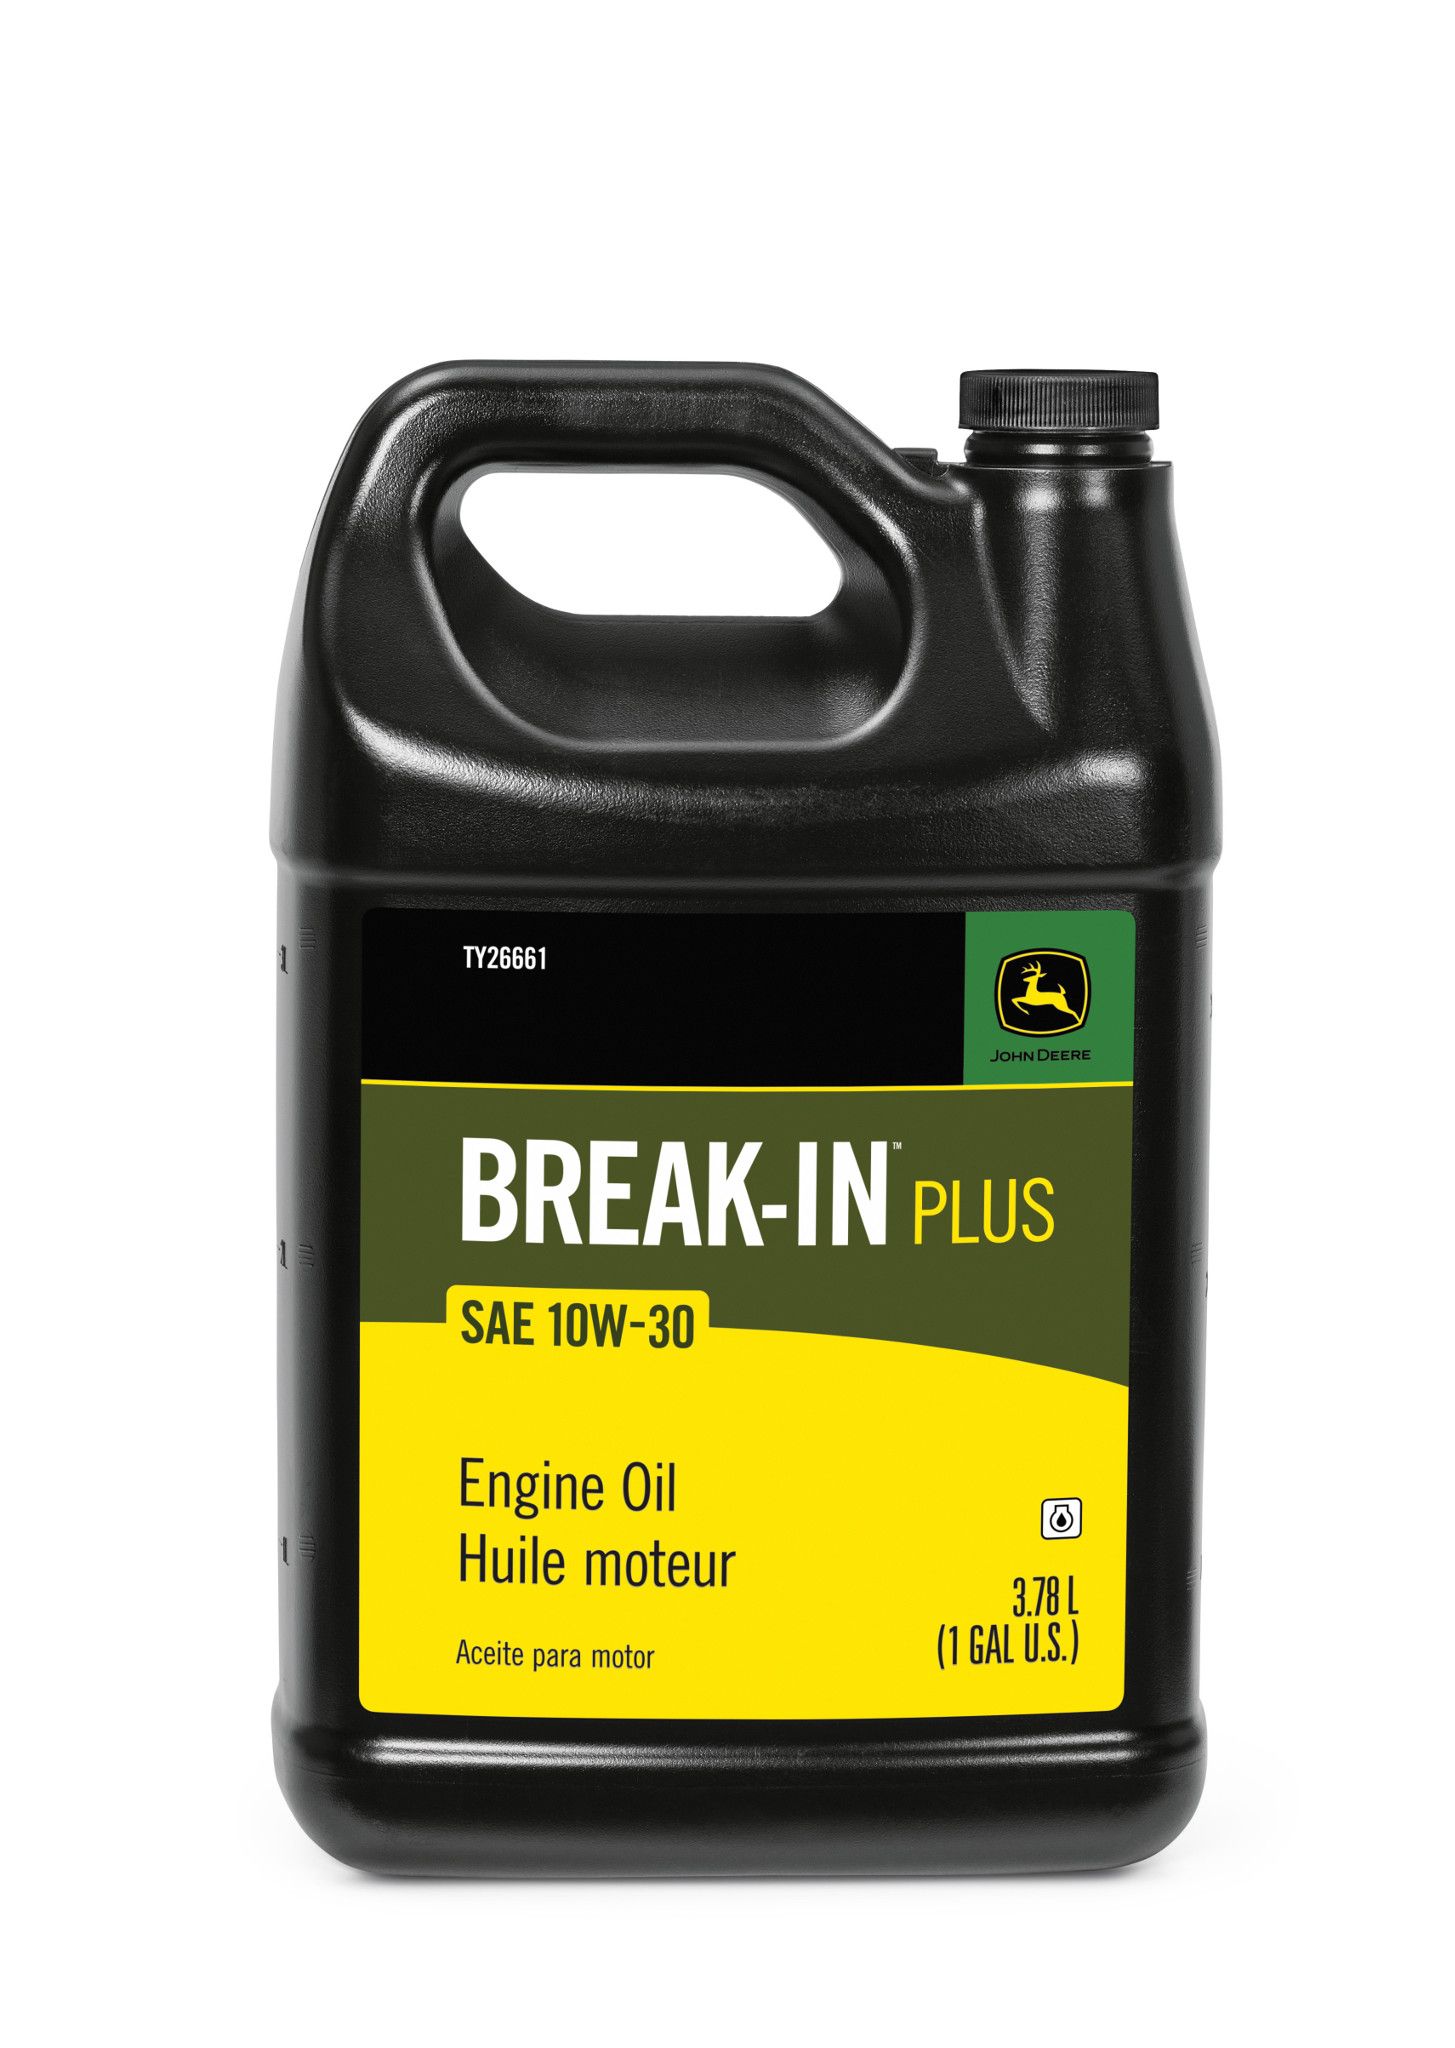 Break-In Plus Engine Oil - TY26661